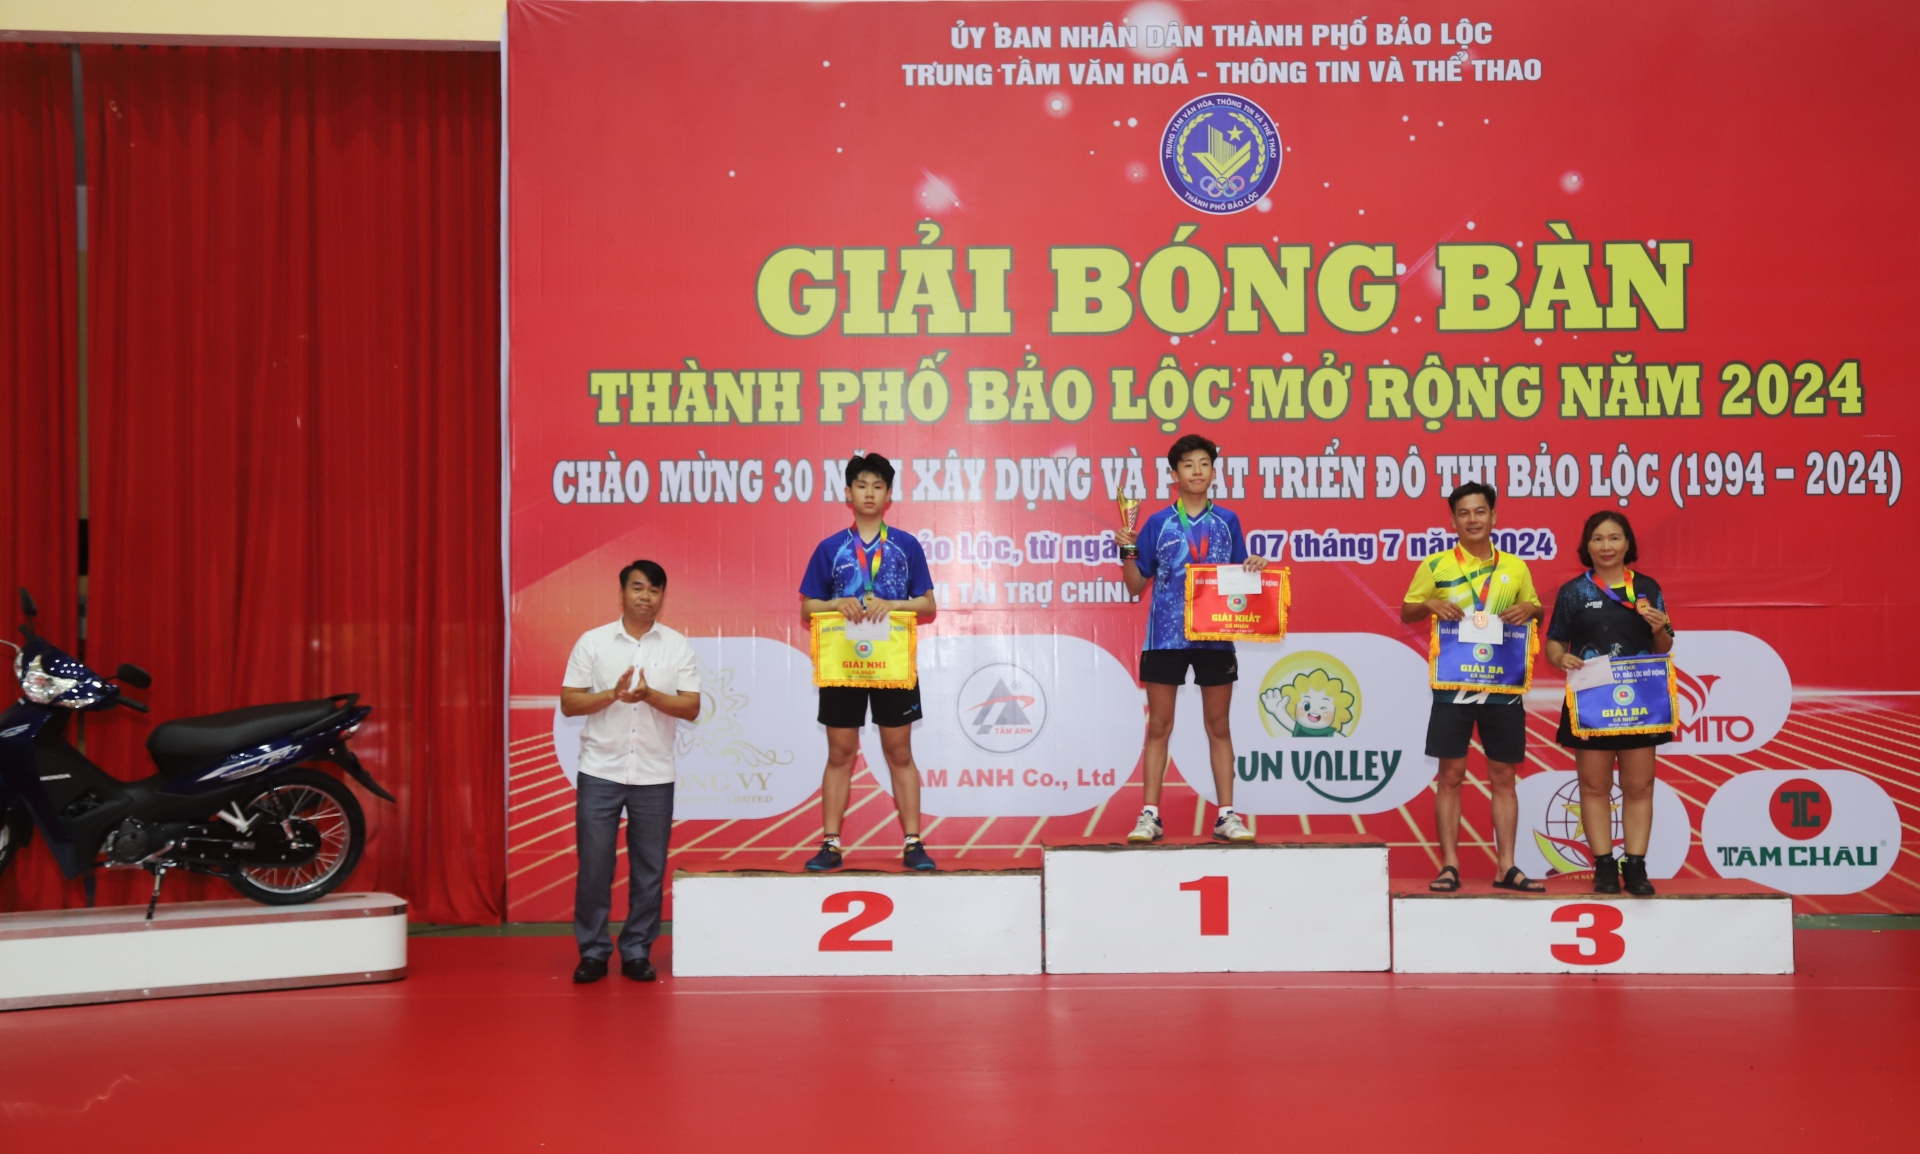 Chúc vô địch nội dung cá nhân của giải đấu được trao cho Nhà vô địch Đông Nam Á Đinh Nhật Nam